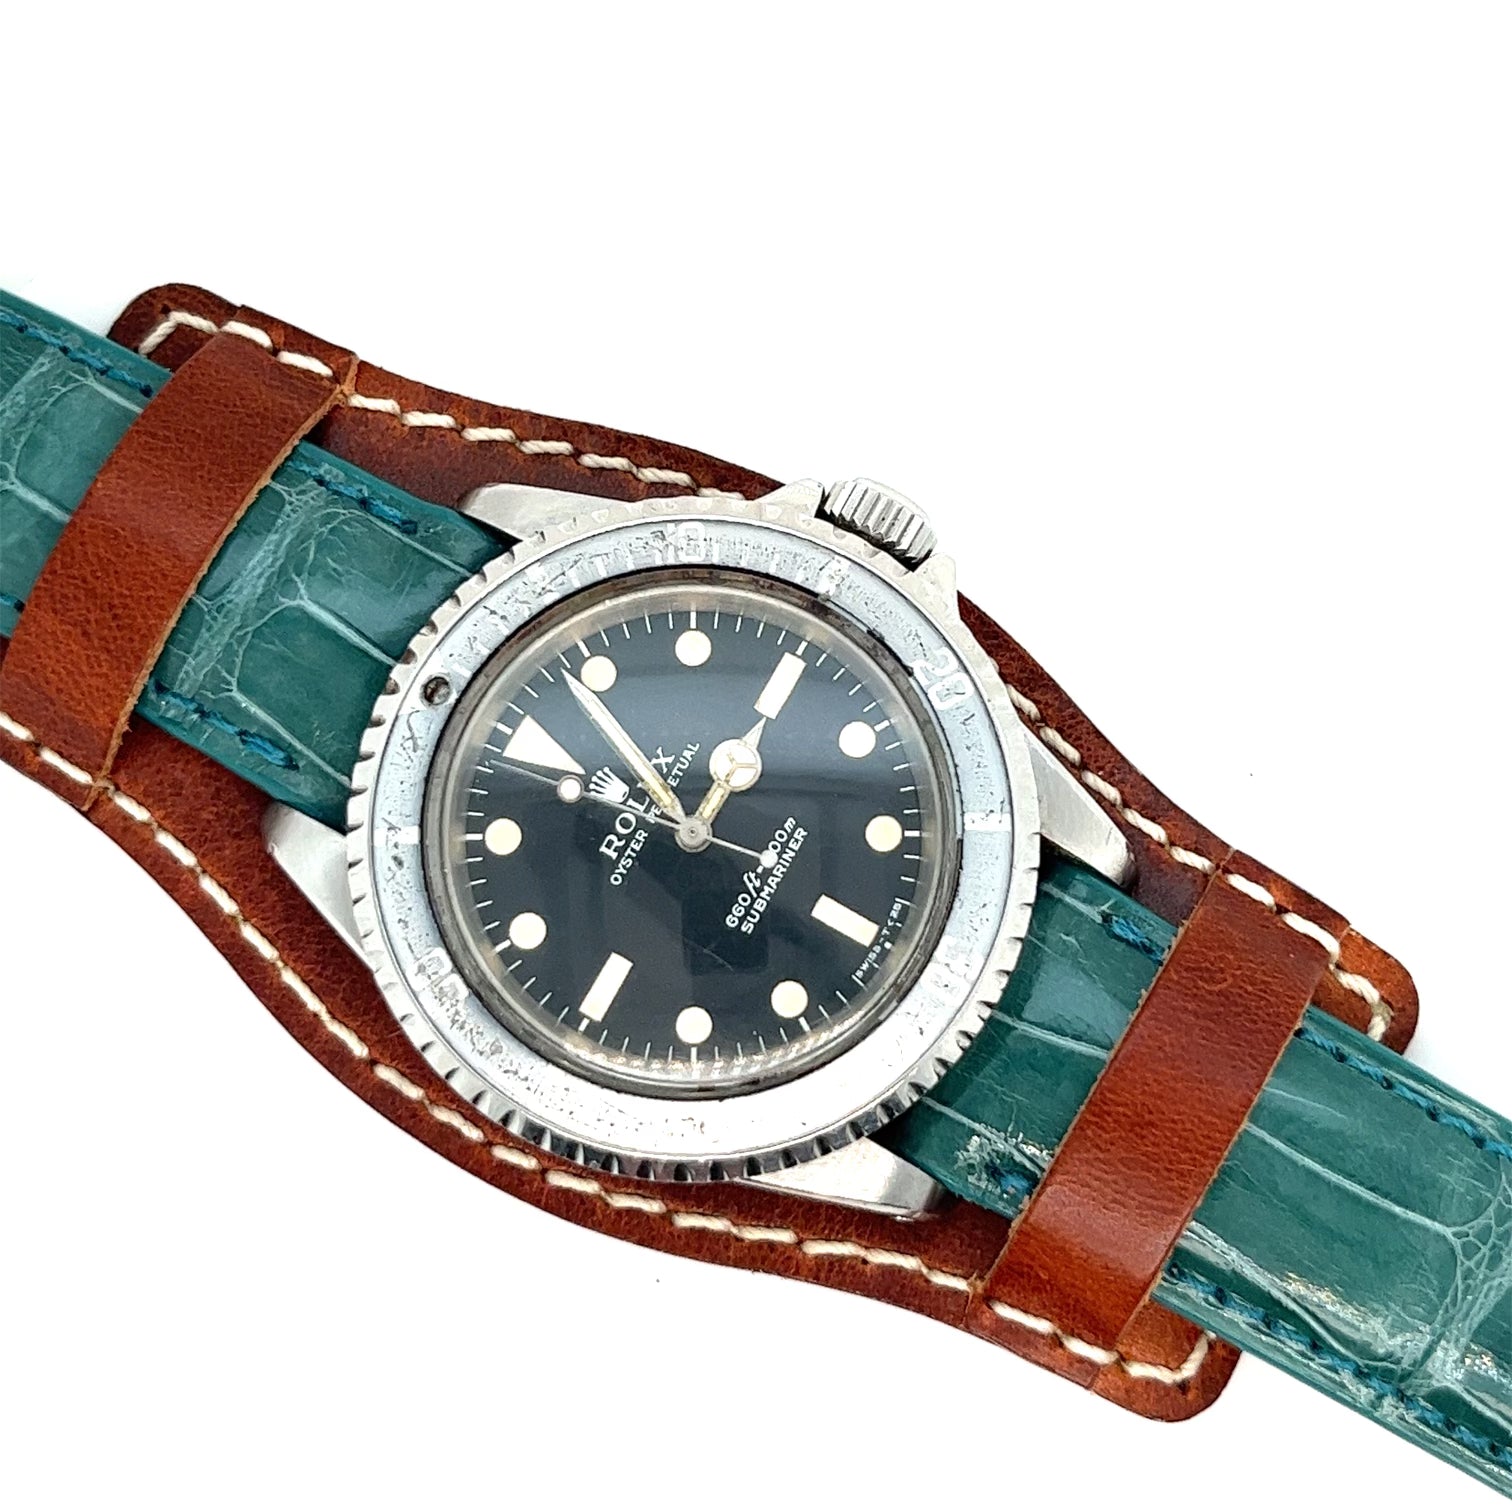 16, 18, 19, 20, 22 mm Alligator and Leather Bund Watch Strap Combination